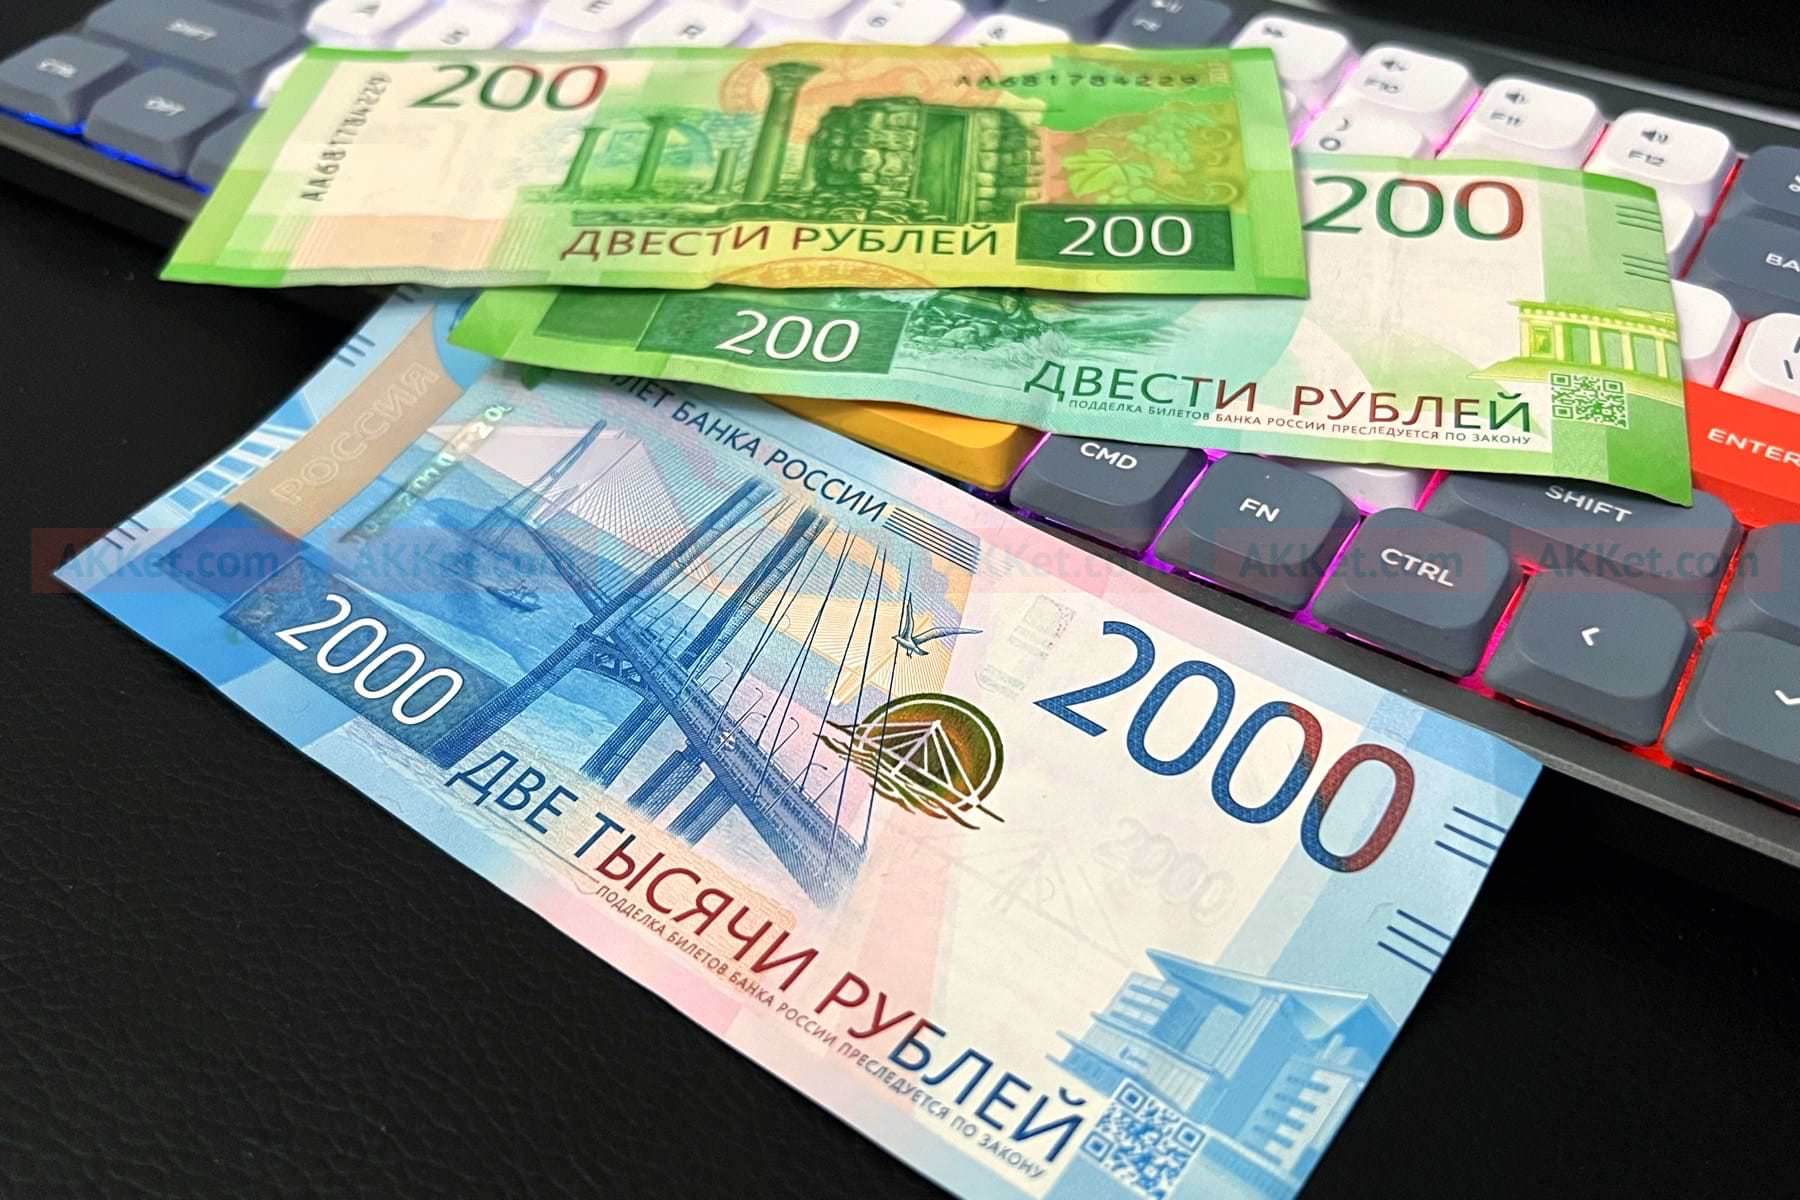 Обнаружена редкая банкнота, за которую можно легко получить больше 200 000 рублей